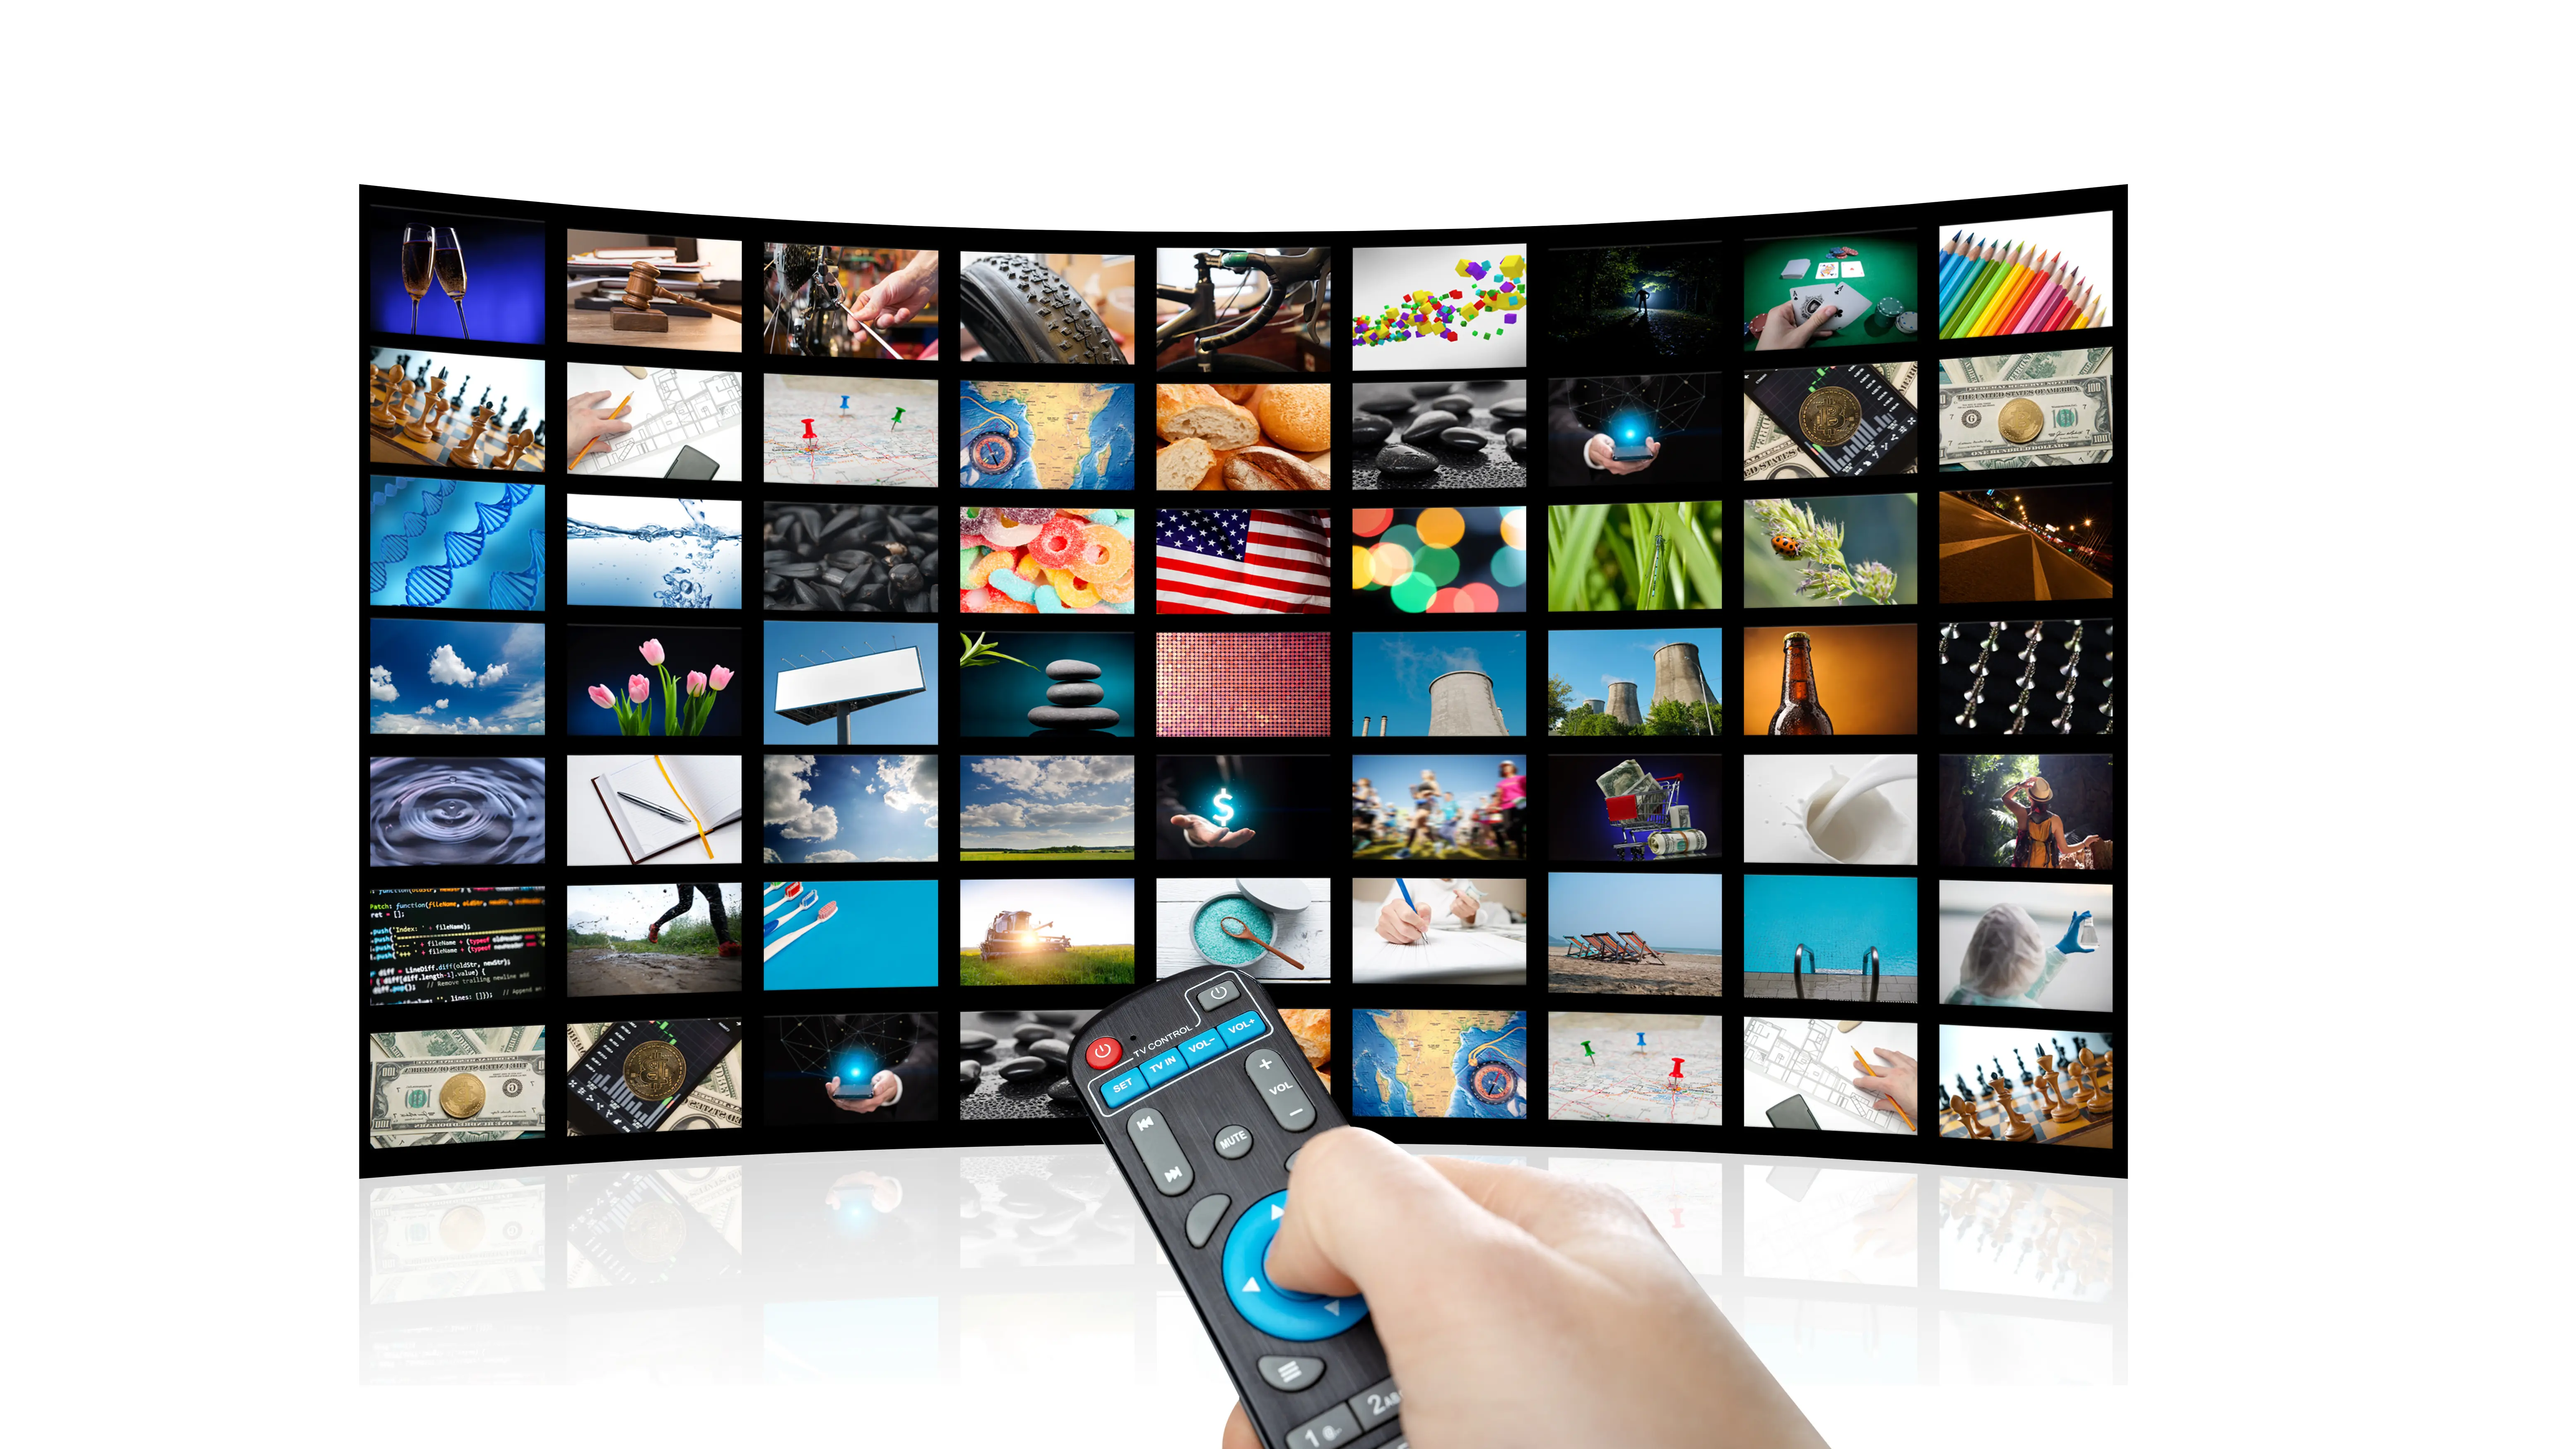 Smart TV - Connected TV - Смарт ТВ - Технология интеграции интернета и цифровых интерактивных сервисов в телевизоры и ресиверы цифрового телевидения